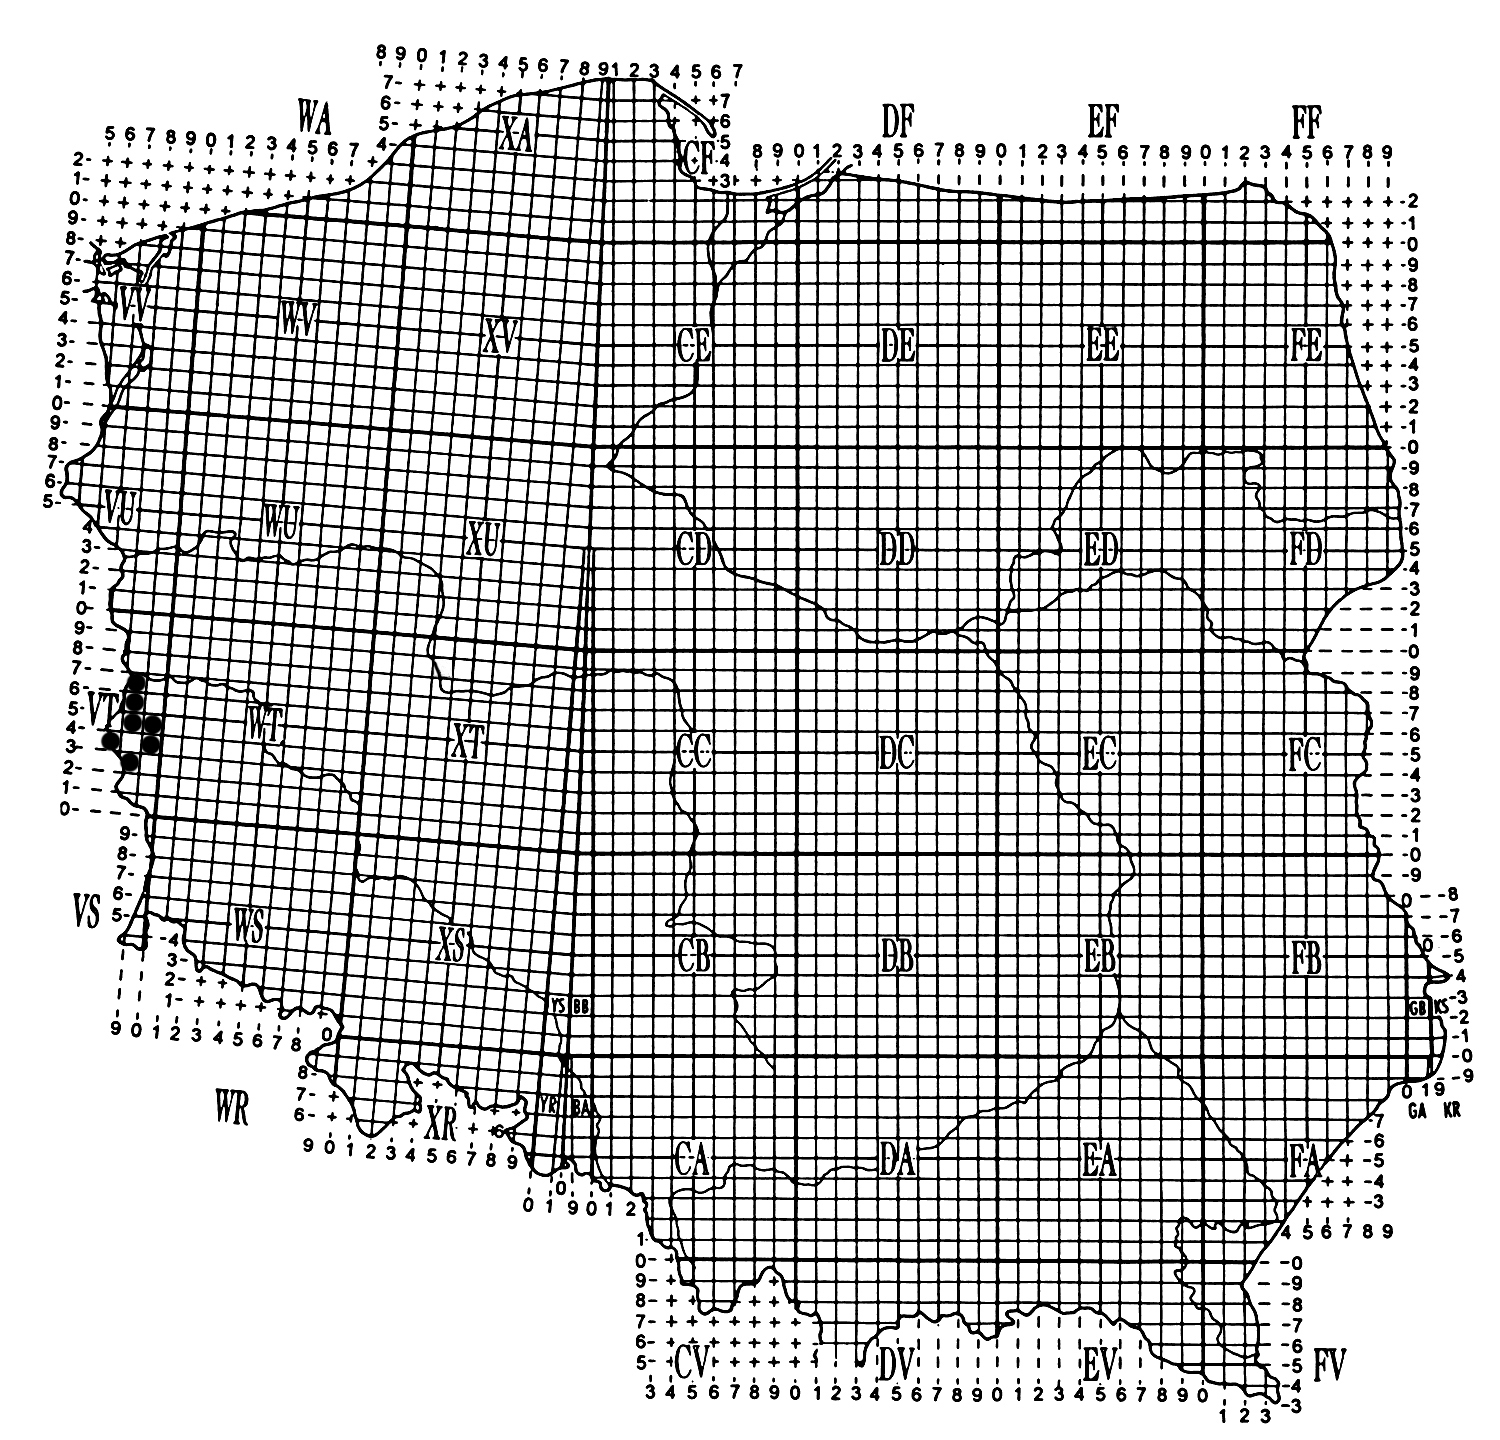 140 J. WENDZONKA Ryc. Rozmieszczenie Hylaeus lineolatus w Polsce. Fig. The distribution of Hylaeus lineolatus in Poland.